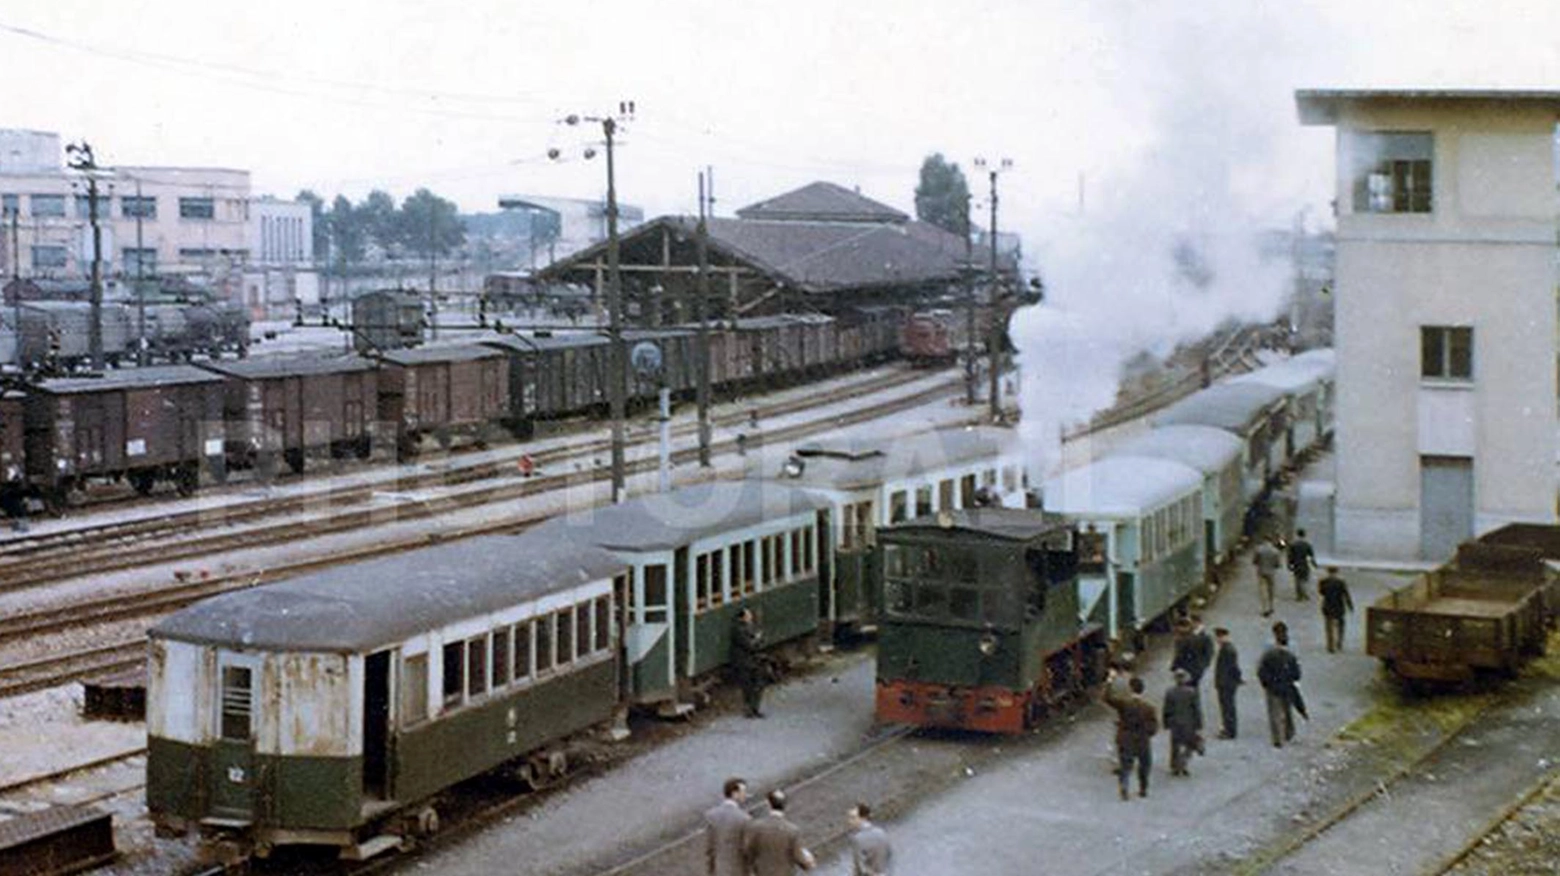 La stazione ferroviaria di Monza